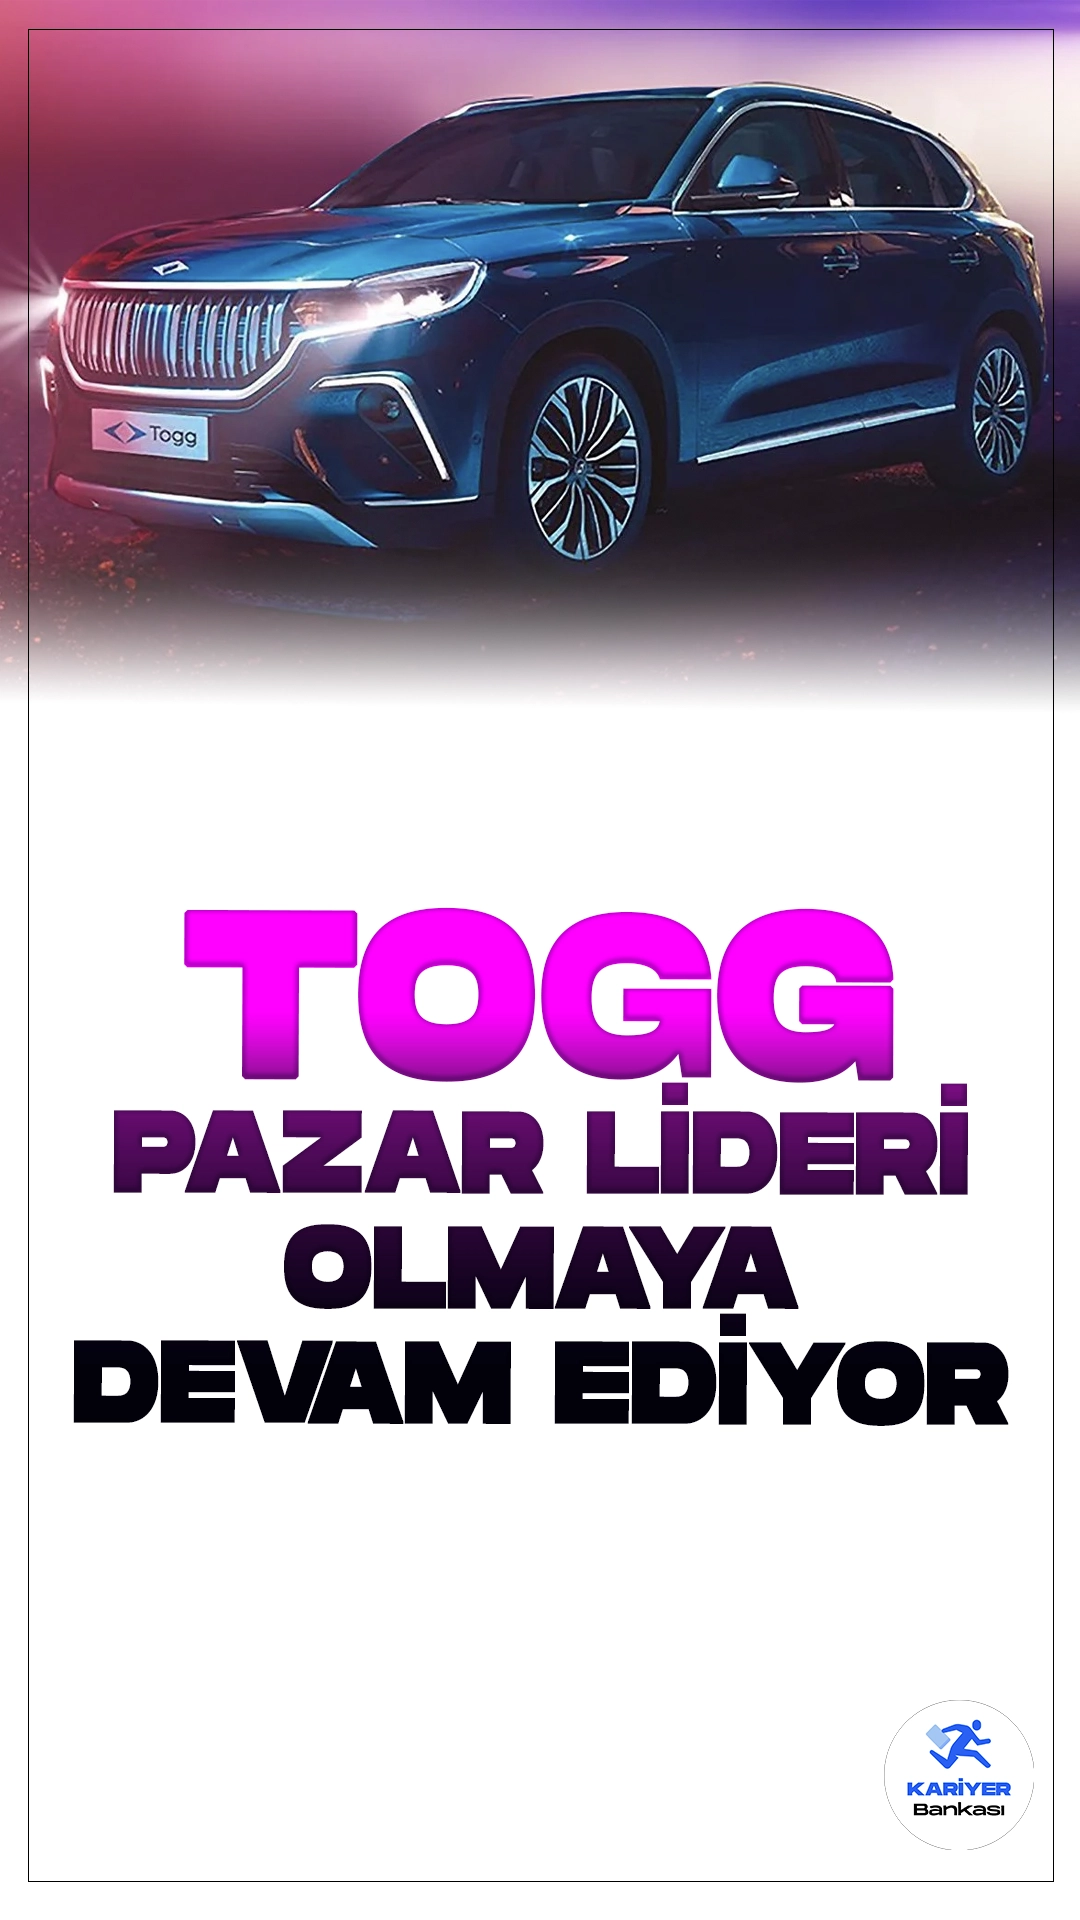 Togg Elektrikli Otomobil Pazarında Nisan Ayında Lider Konumunda.Geçen ayın verilerine göre, Türkiye elektrikli otomobil pazarında Nisan'da Togg, toplam 3,003 adetlik satışıyla liderliğini sürdürdü. Bu satışlar arasında Togg T10X, 739 adetle öne çıktı, SsangYong Torres 739 adetle ikinci sırada yer aldı ve BMW X1 ise 361 adetle üçüncü oldu.